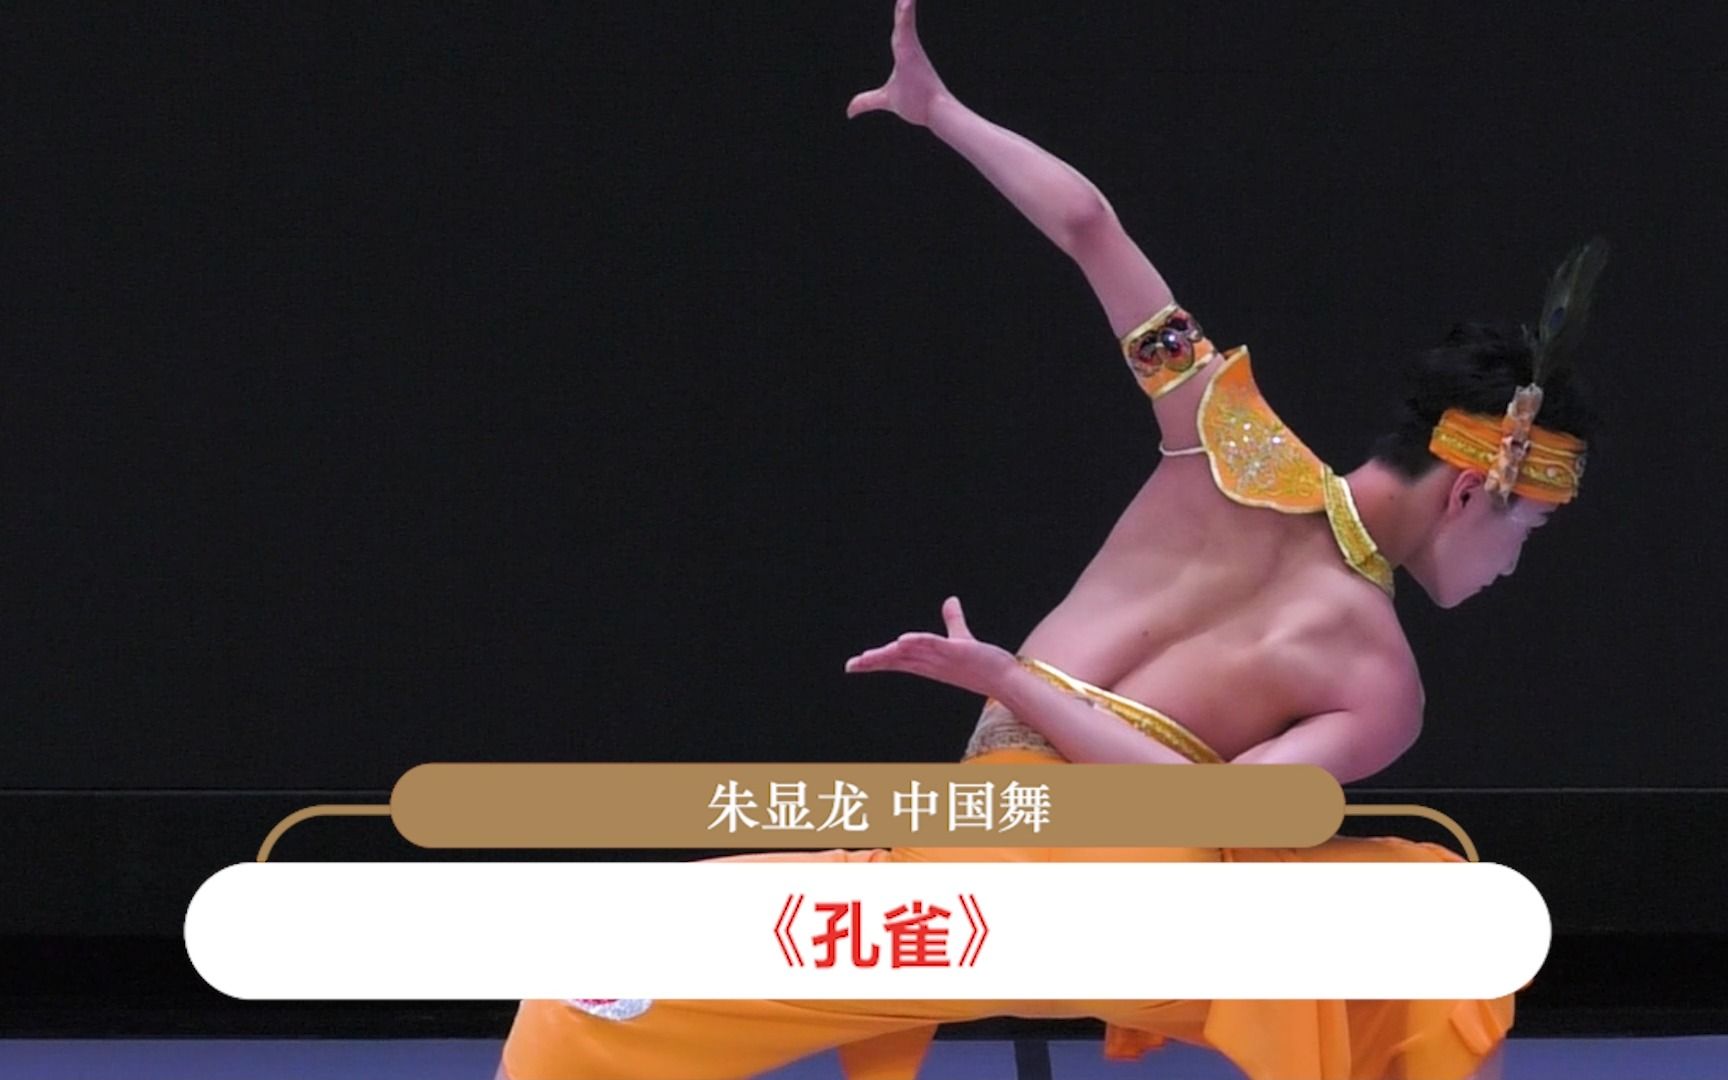 【2023中国顶尖舞者成长计划】全国推选 16-18岁组晋级学员  朱显龙  中国舞 《孔雀》